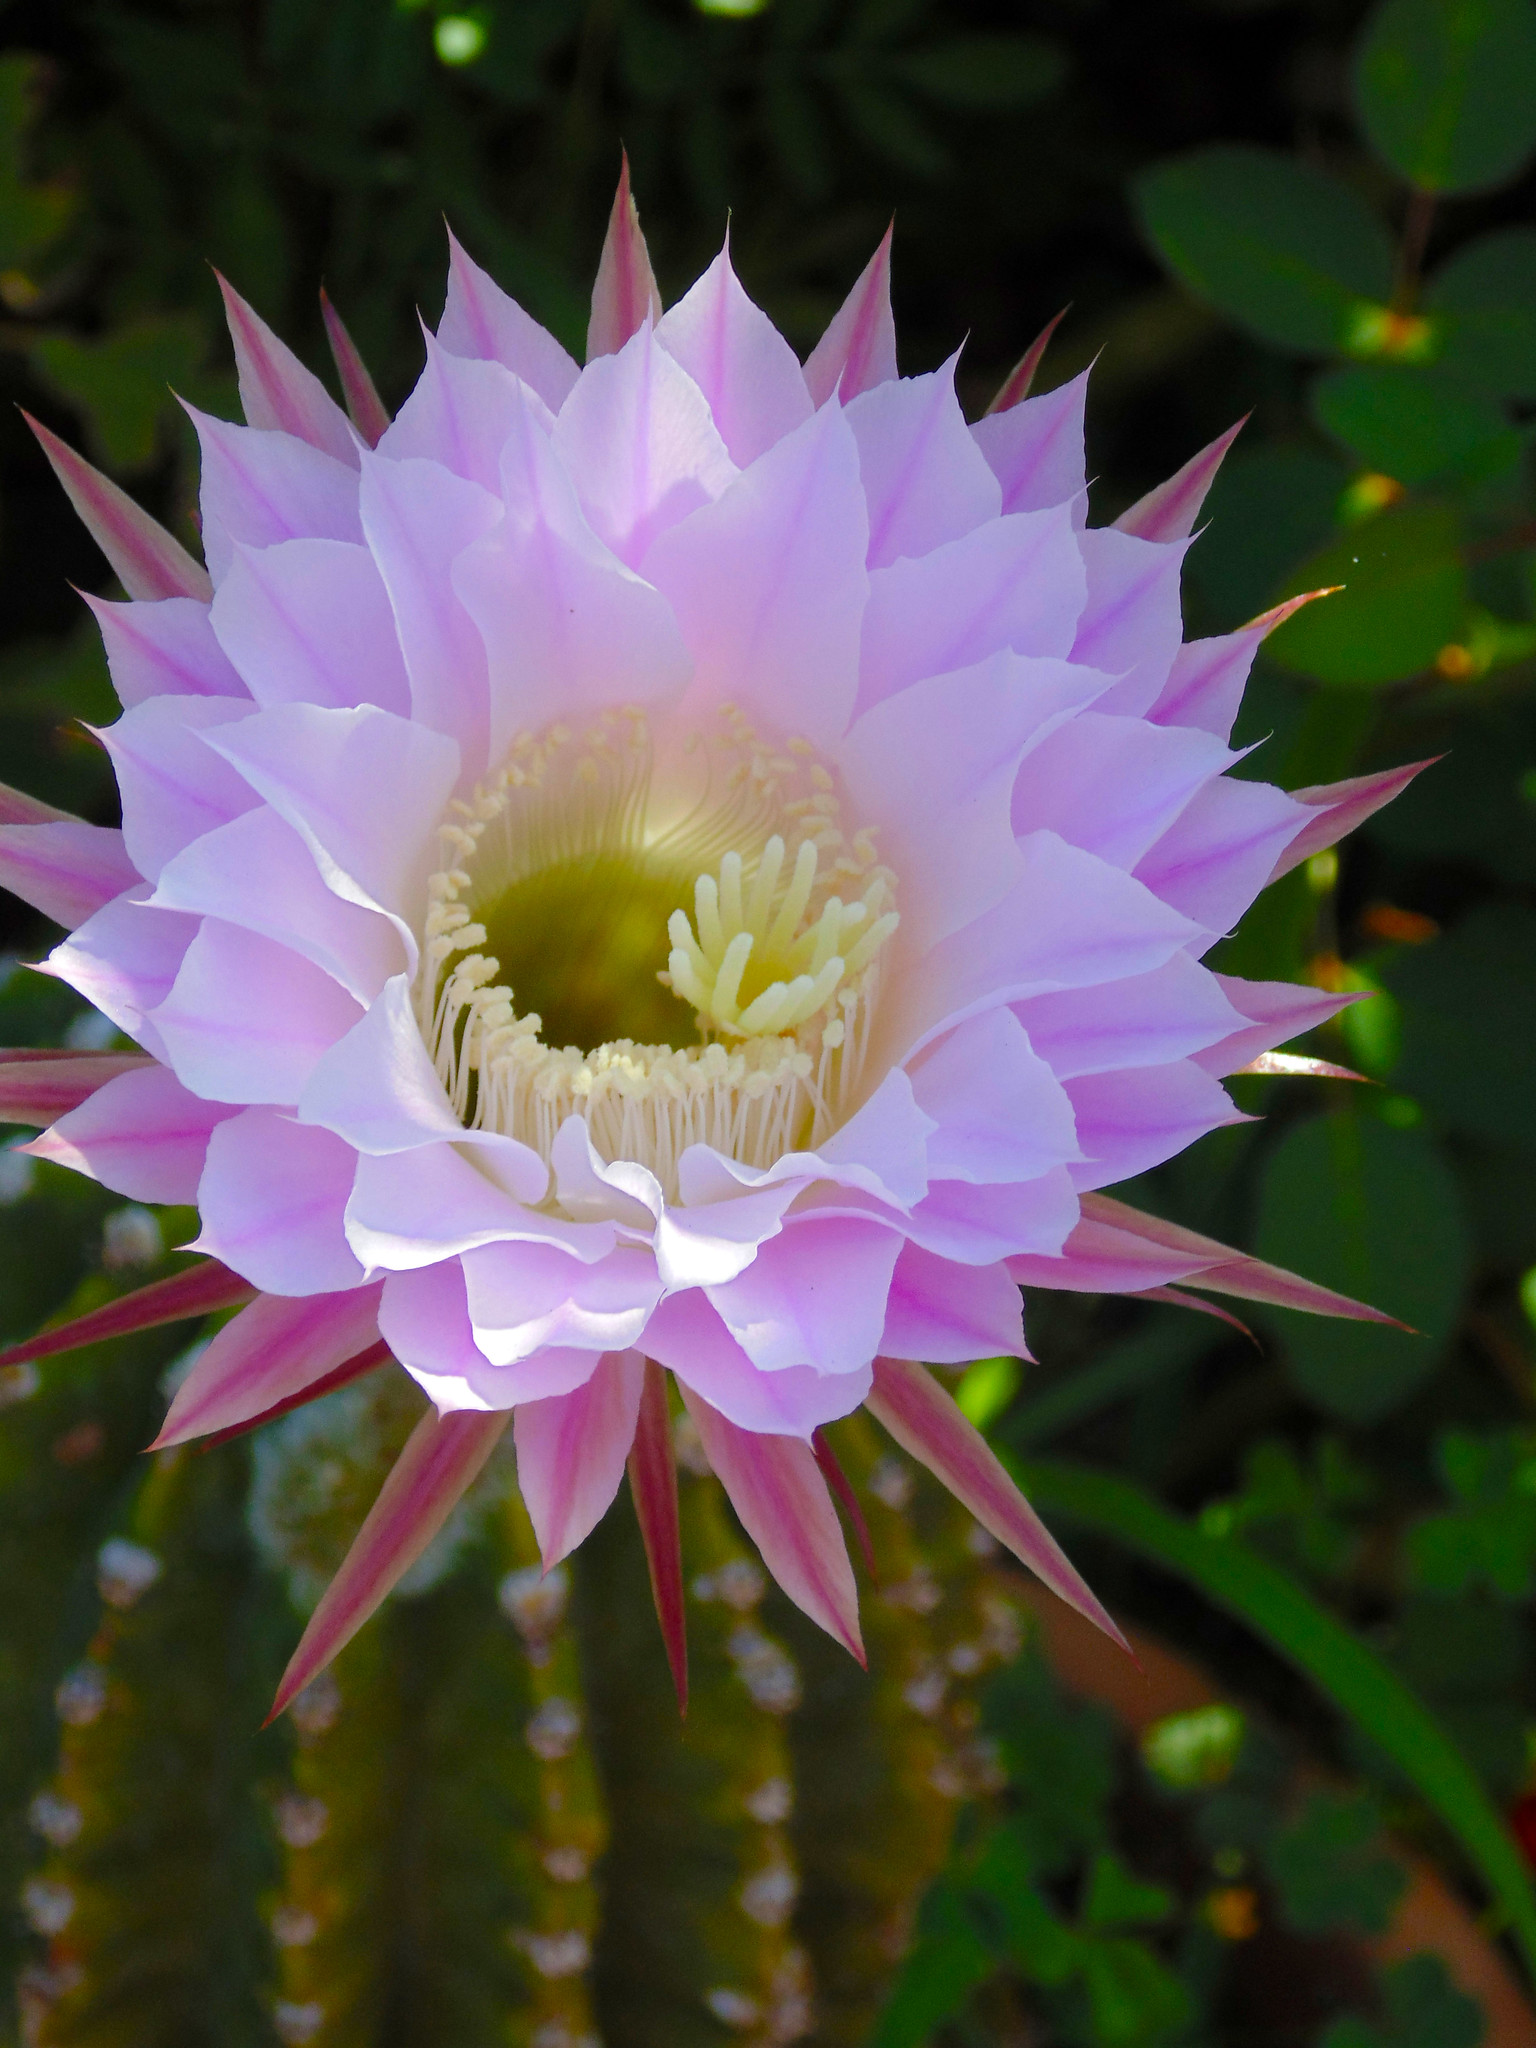 Cactus flower close up